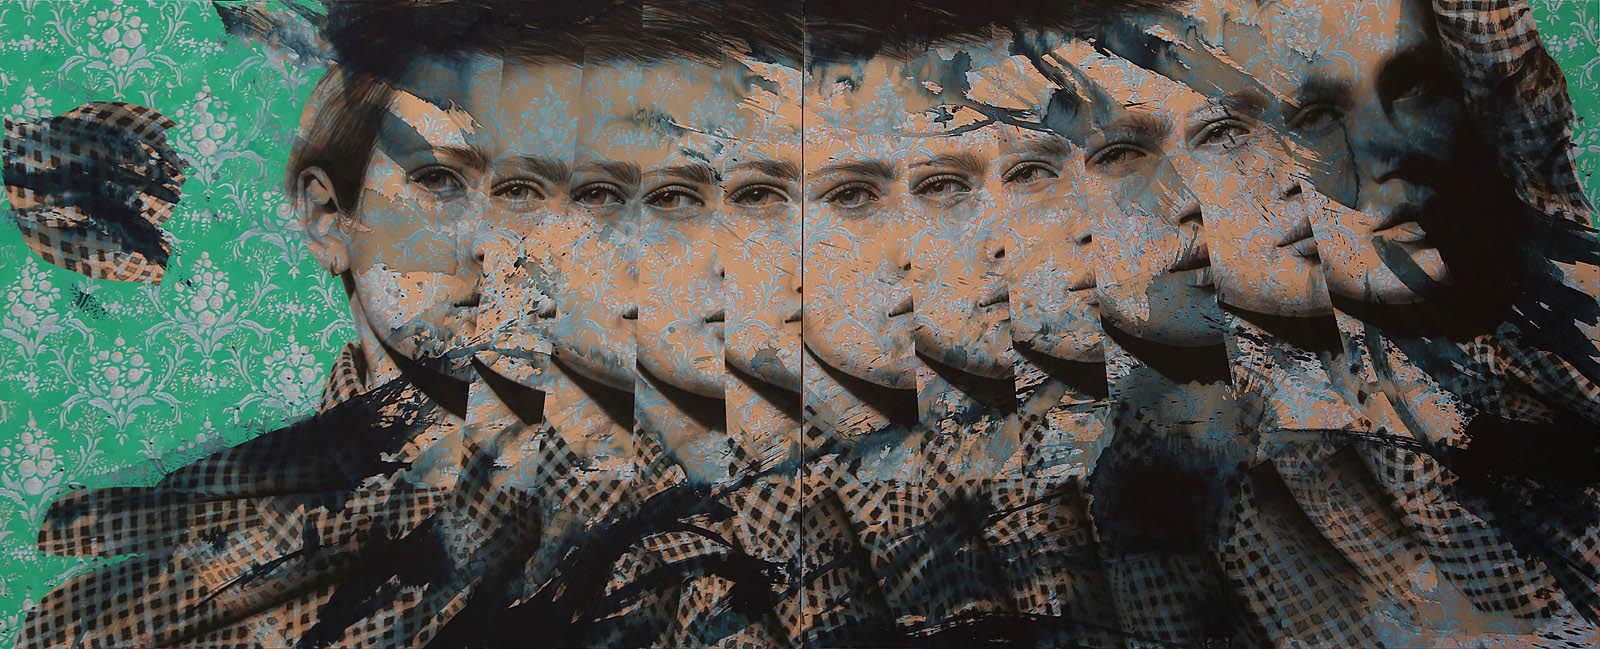 Hayat- Burcu, 2013, Tuval üzerine akrilik, Acrylic on canvas, 200x500 cm